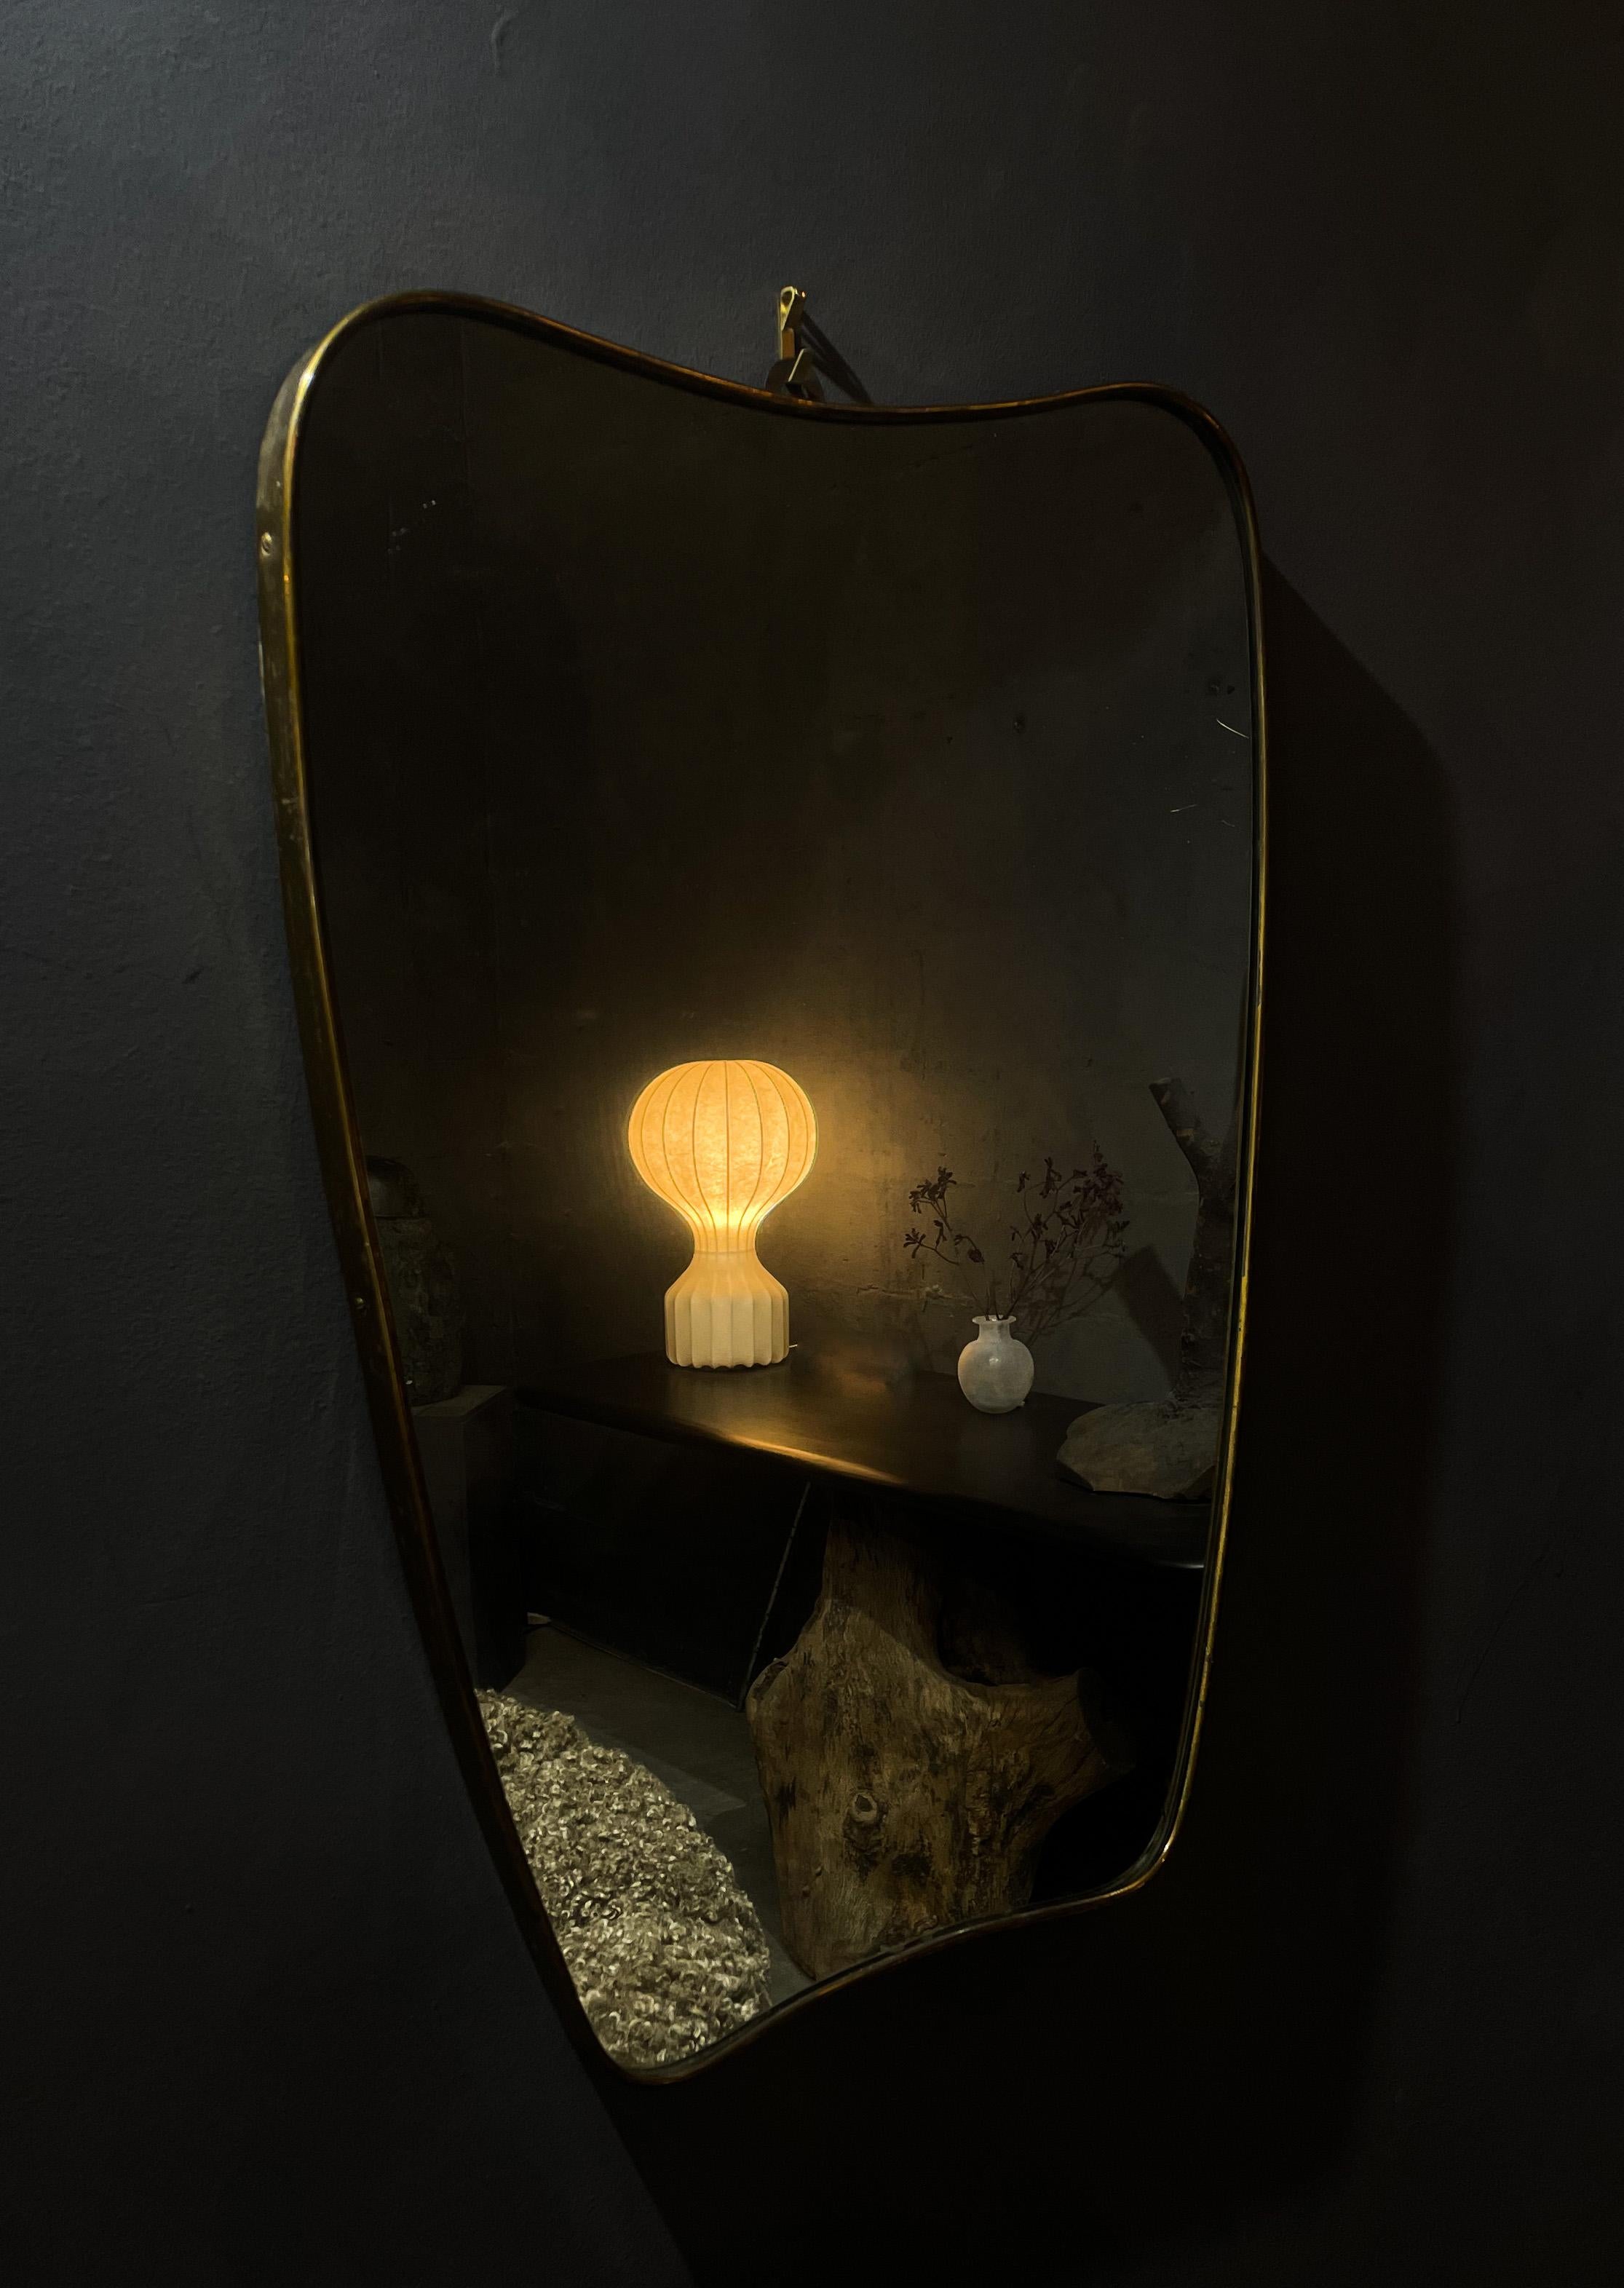 Ce magnifique miroir en laiton massif à la manière de Gio Ponti a été fabriqué en Italie dans les années 1950. Usure due à l'âge - patine autour du laiton. Bon état général. Les vitres ont été remplacées. Une forme et un design étonnants et